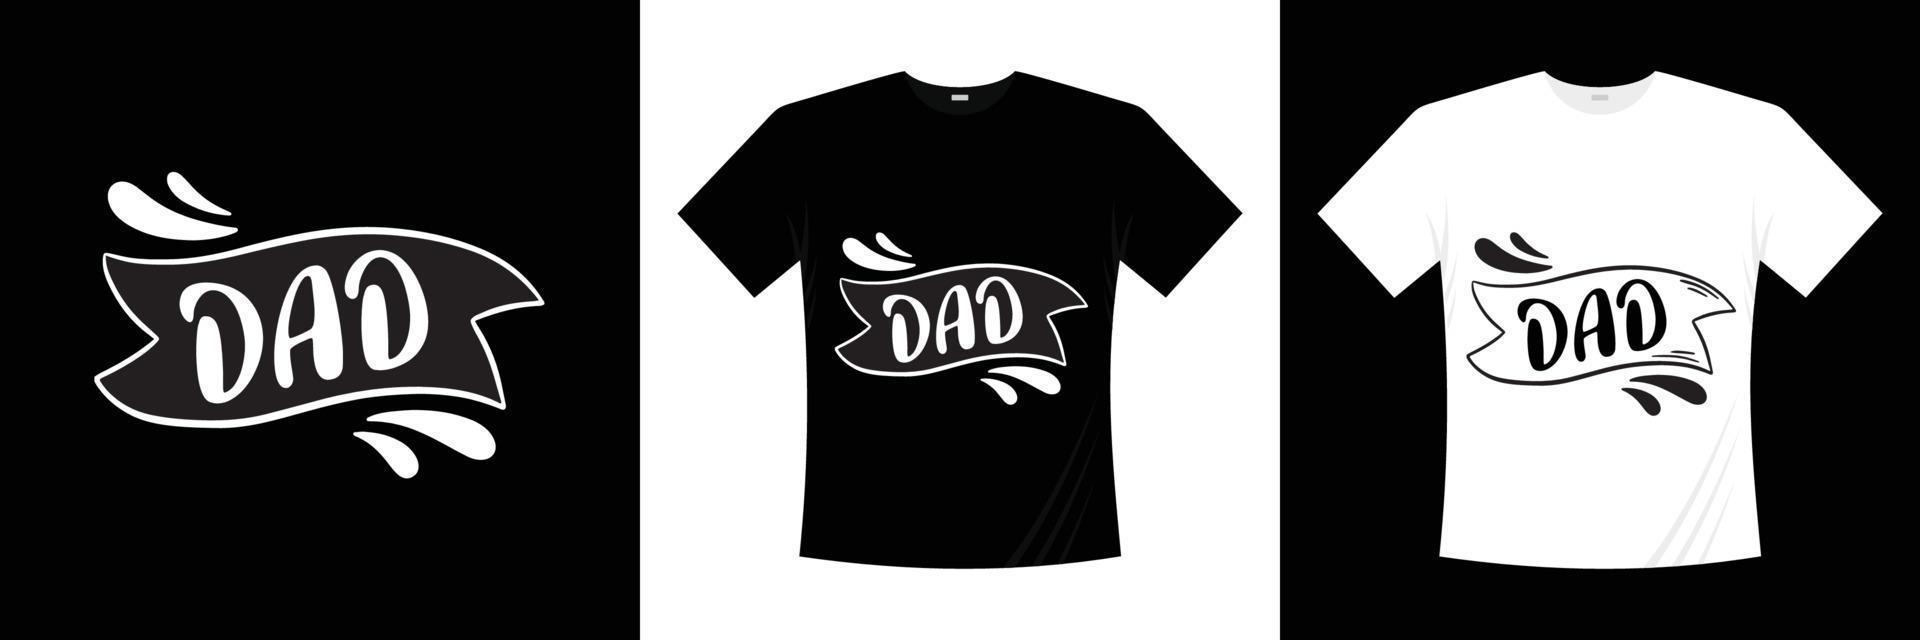 diseño de camiseta de tipografía de papá vector